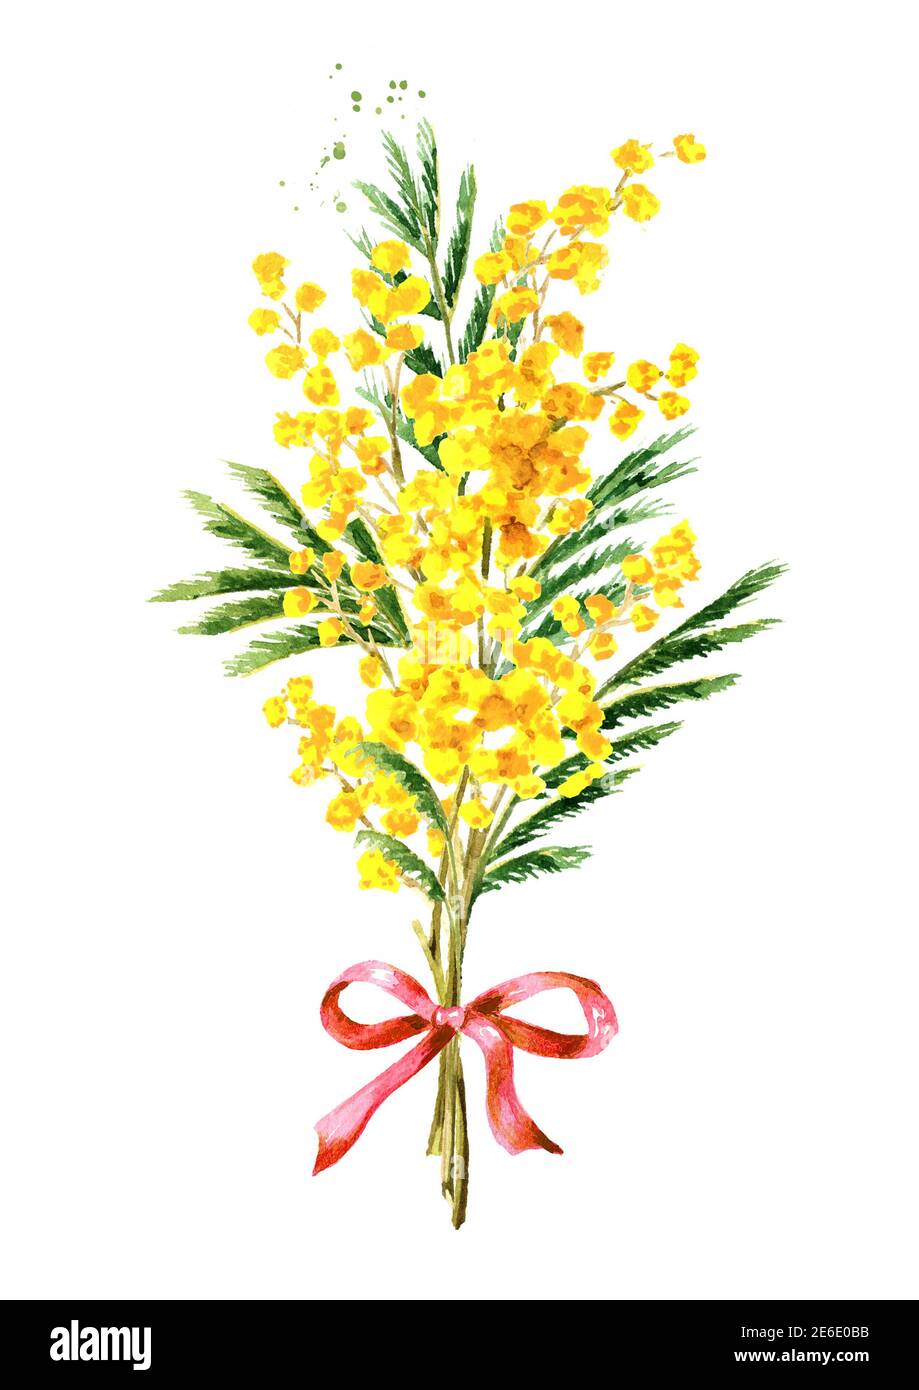 Bouquet di fiori di primavera gialli Mimosa. Immagine disegnata a mano con  acquerello isolata su sfondo bianco Foto stock - Alamy